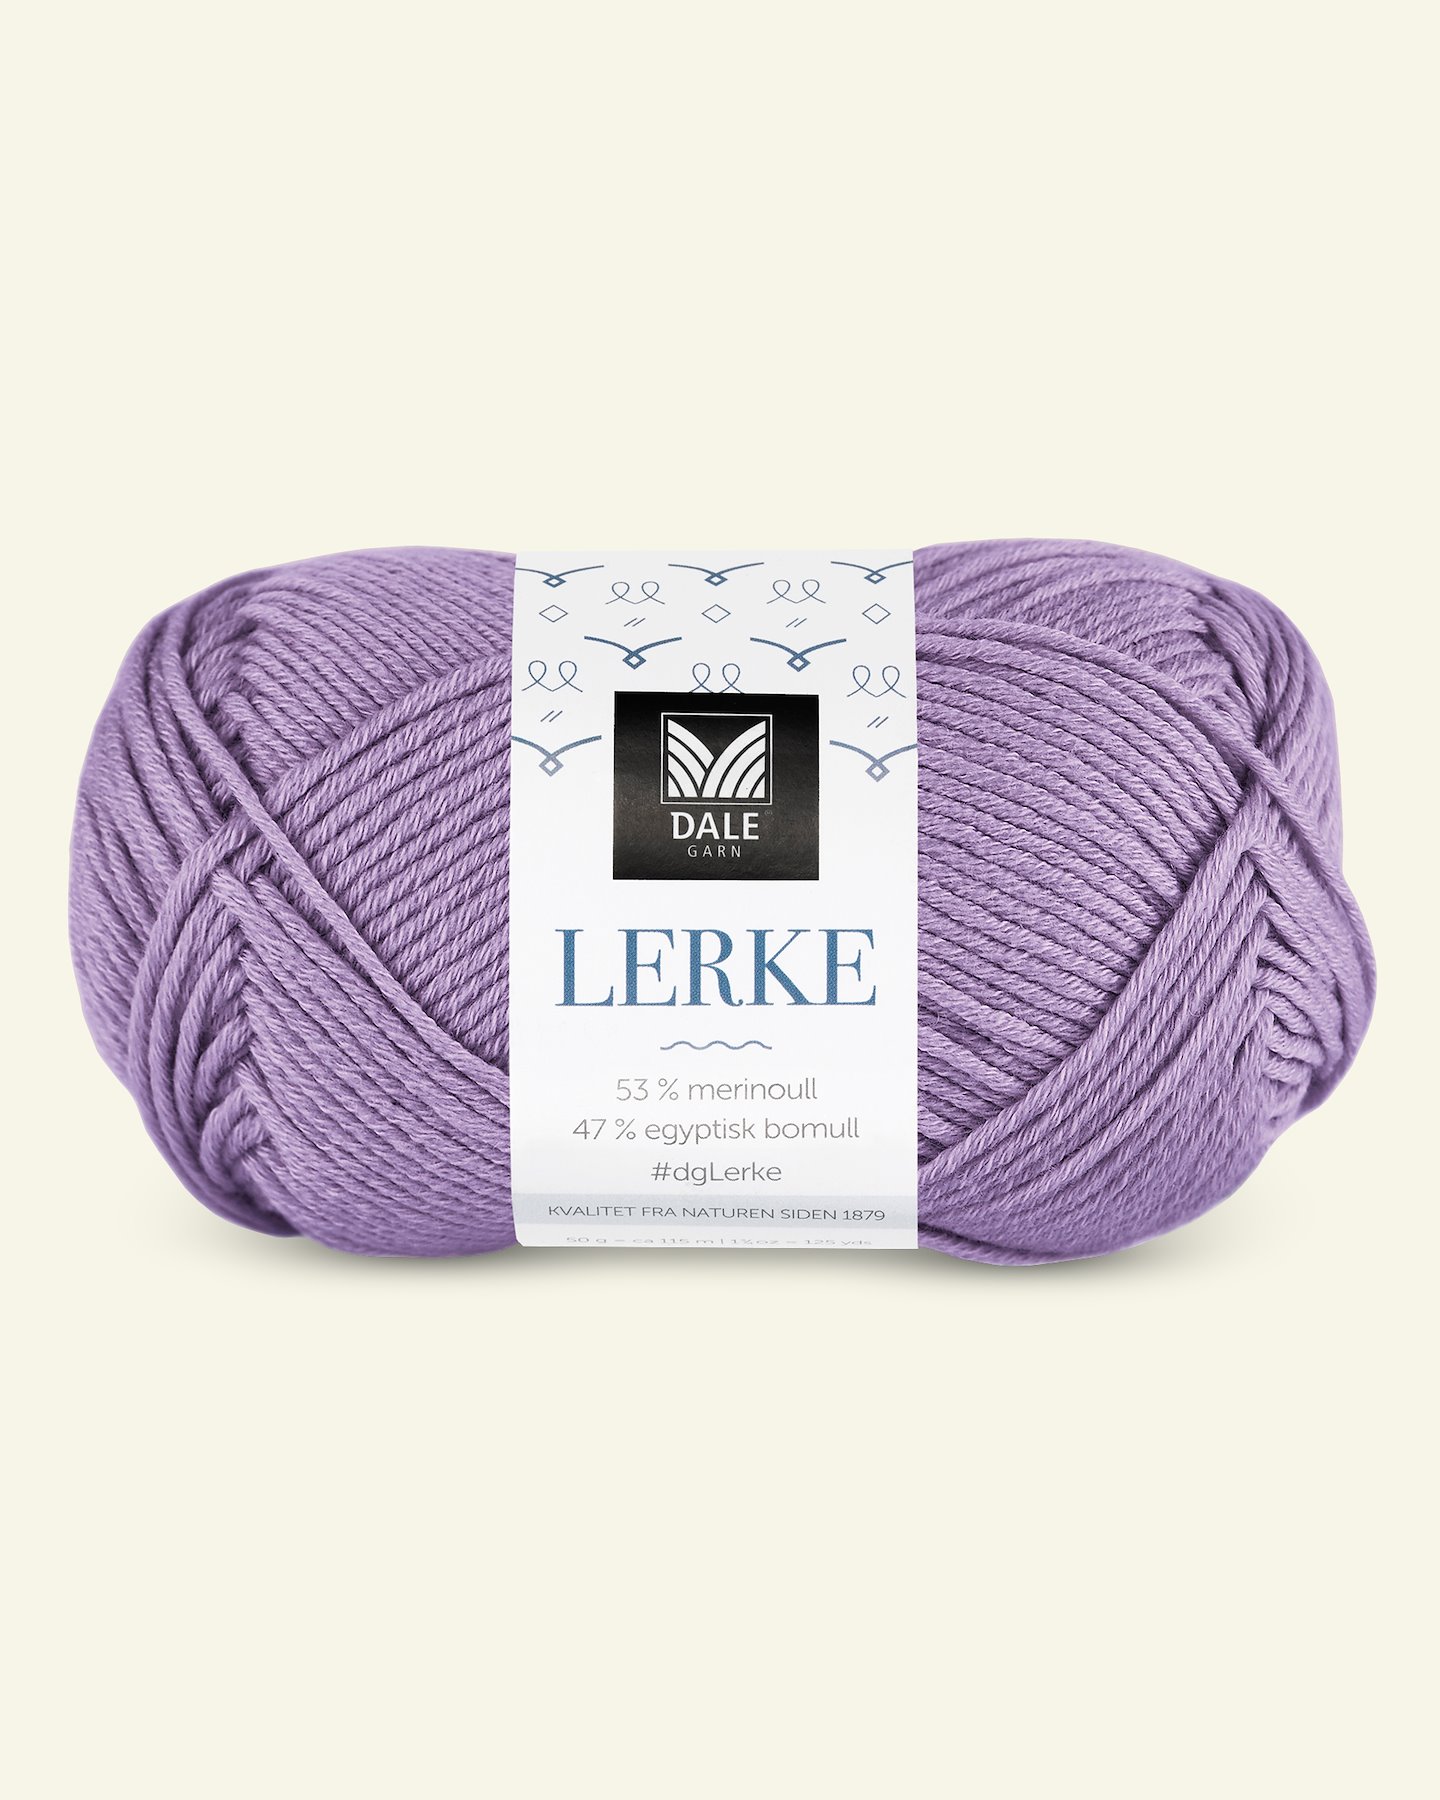 Dale Garn, merino bomuldsgarn "Lerke", lys lavendel (8159) 90000859_pack